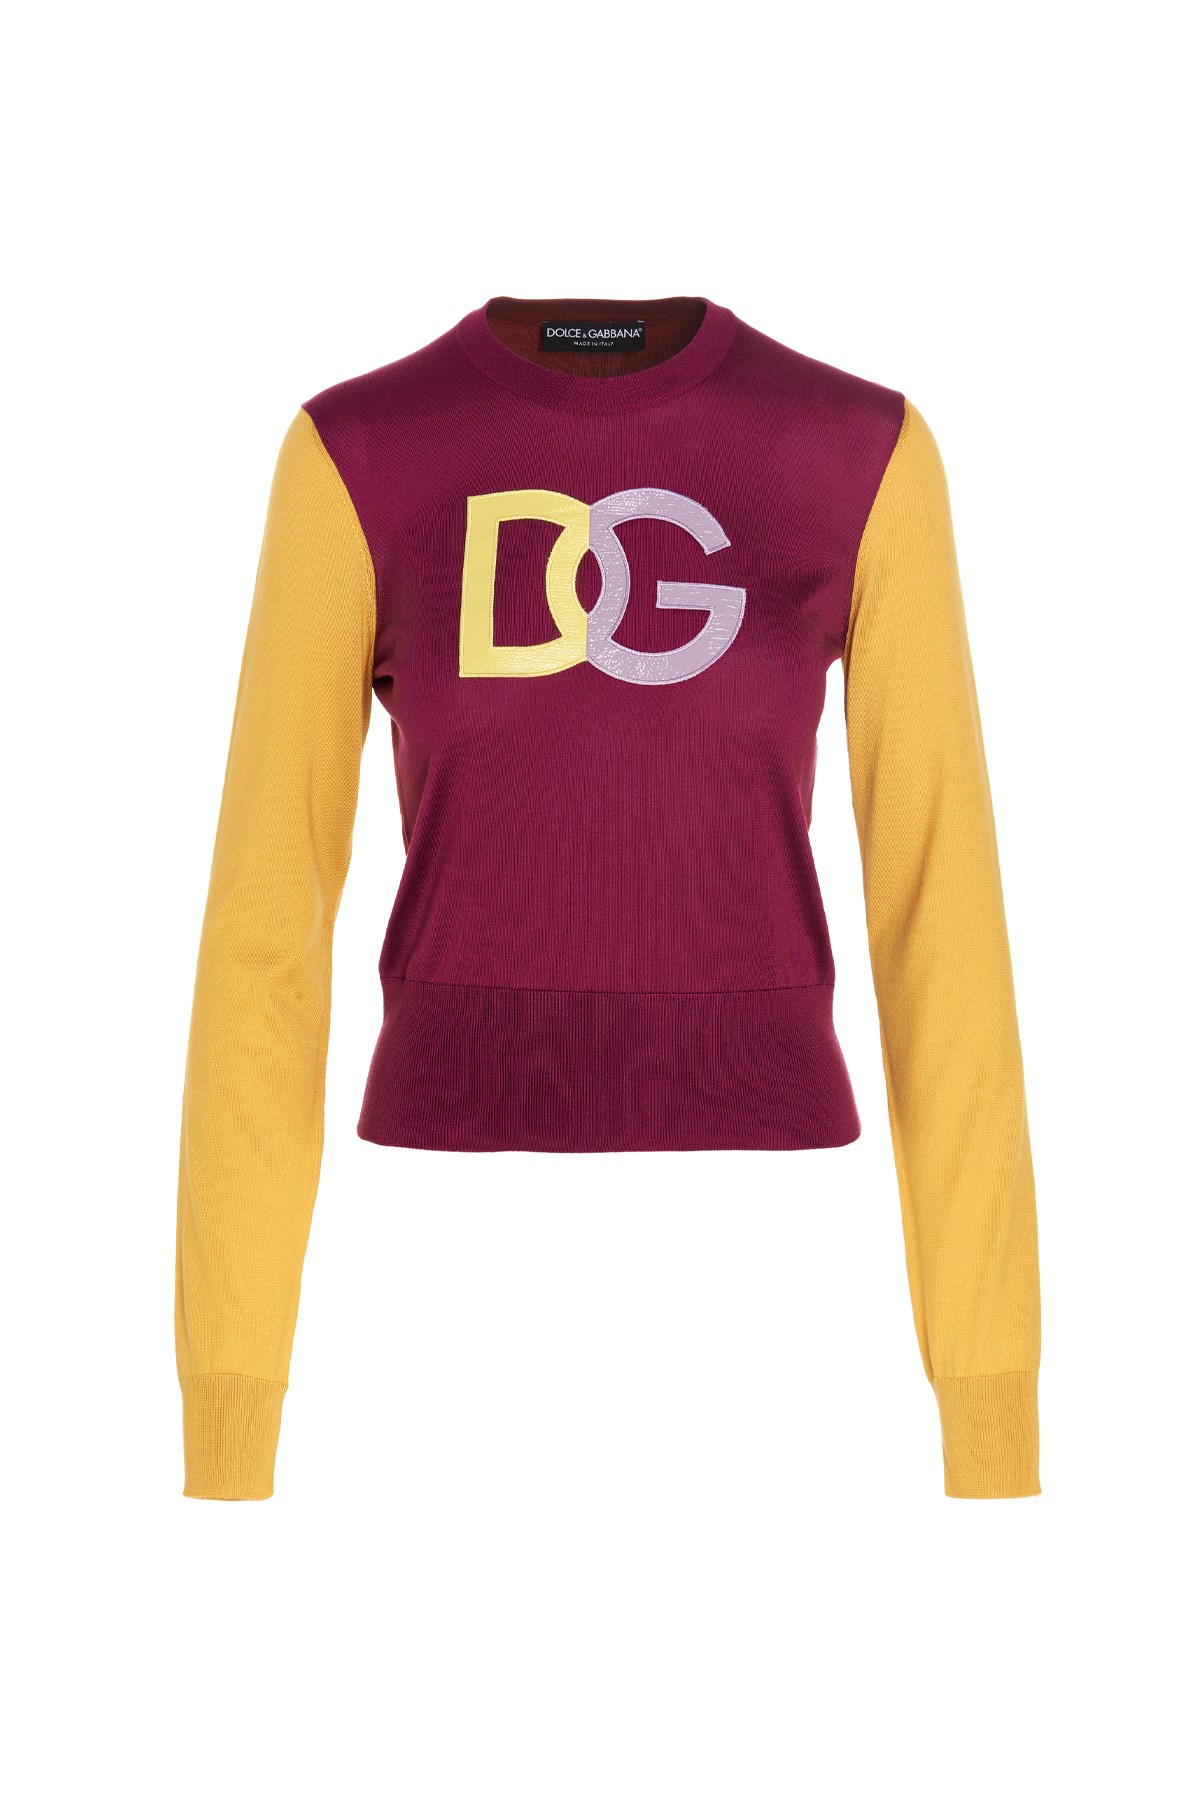 DOLCE & GABBANA 'Dg' Logo Sweater